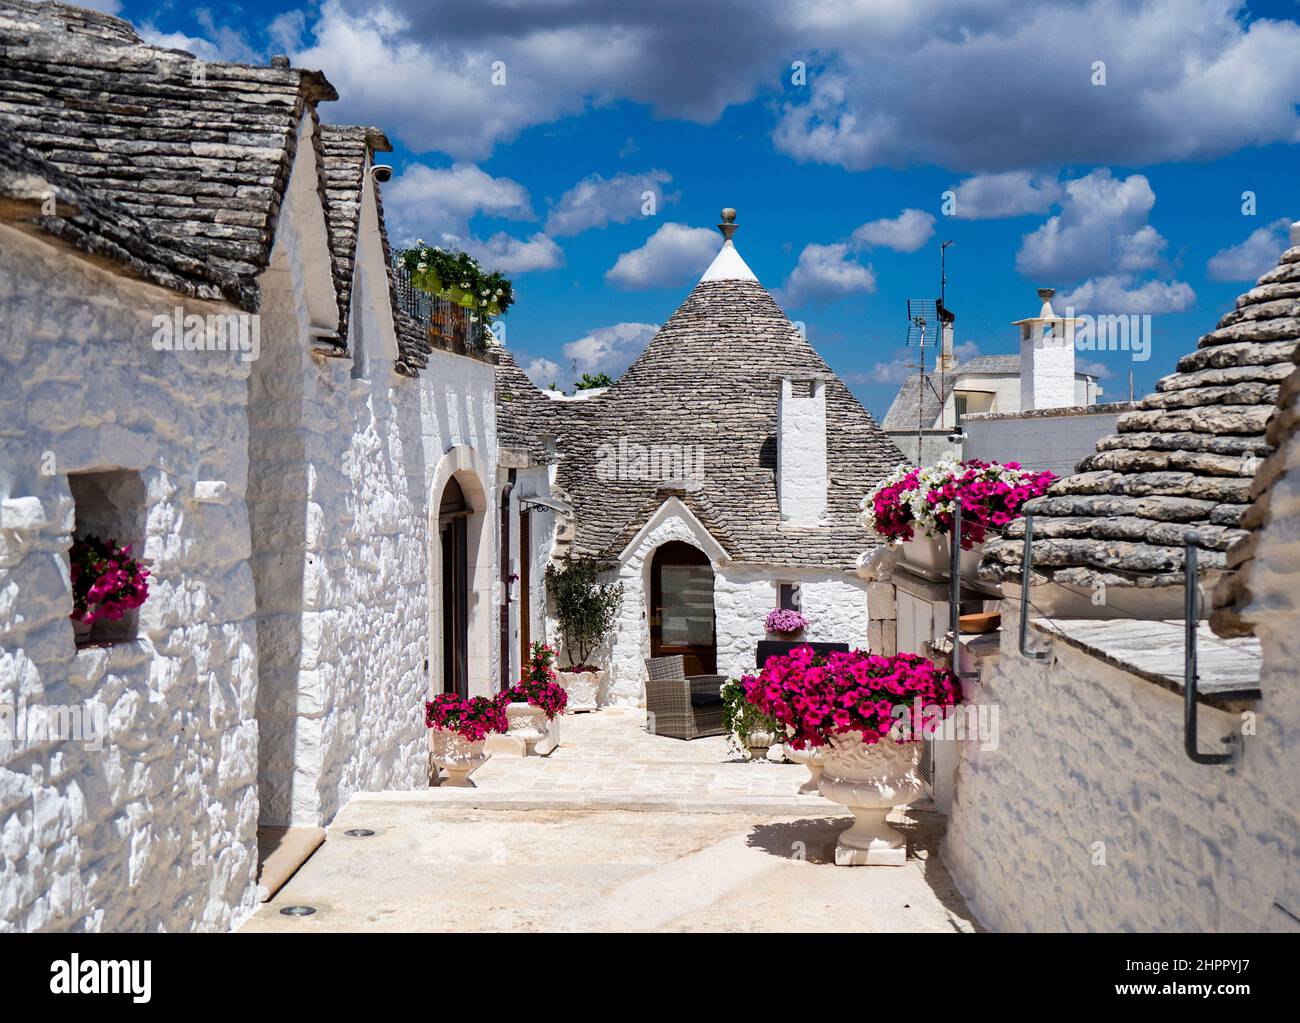 Italy. Apulia. Alberobello, trulli, typical houses Stock Photo